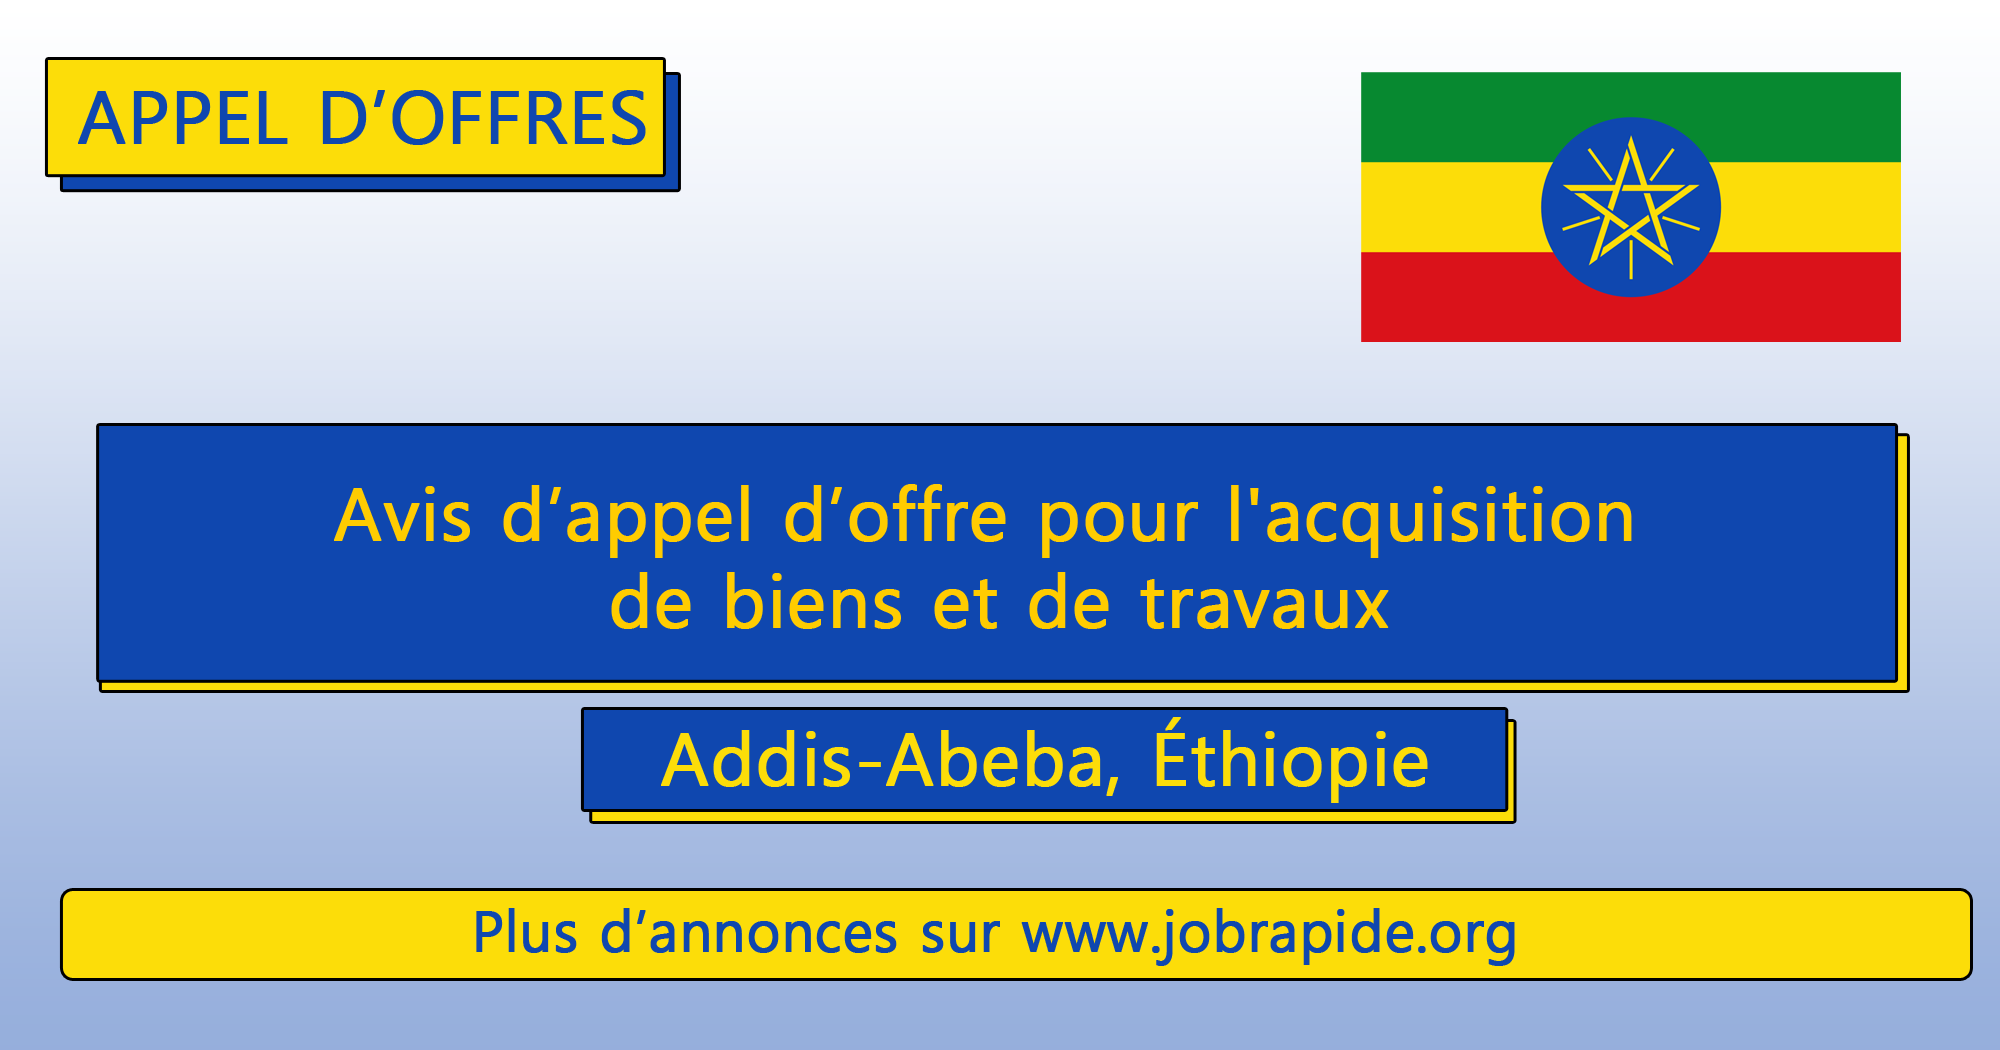 Avis d’appel d’offre pour l’acquisition de biens et de travaux, Addis-Abeba, Éthiopie